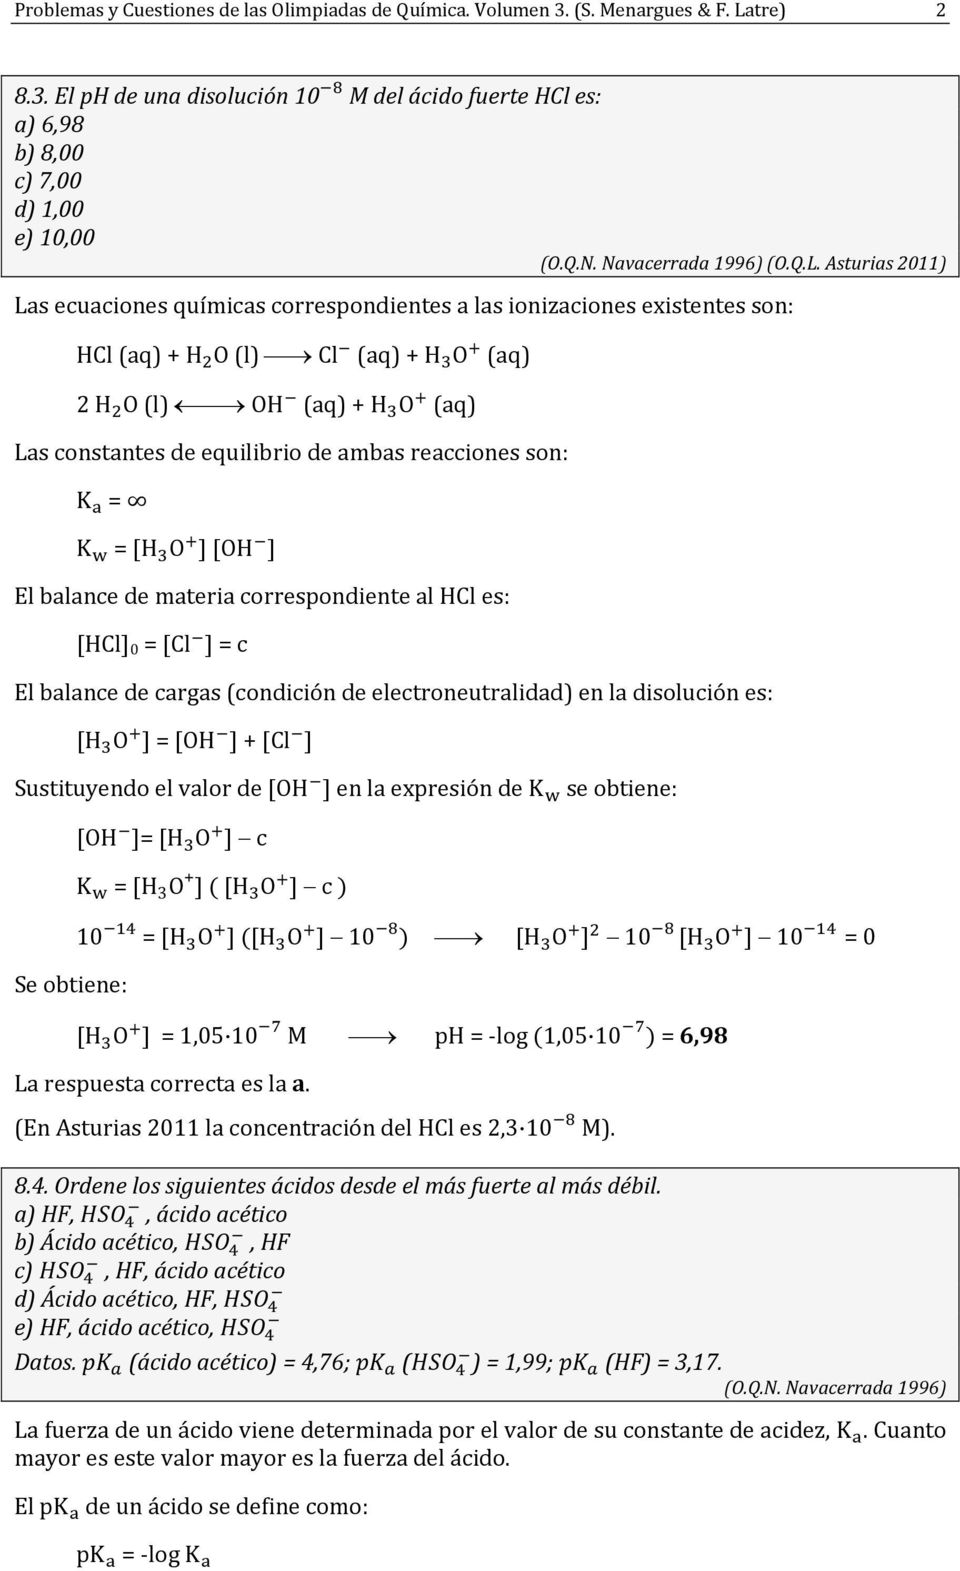 Asturias 2011) Las ecuacines químicas crrespndientes a las inizacines existentes sn: HCl (aq) + H O (l) Cl (aq) + H O (aq) 2 H O (l) OH (aq) + H O (aq) Las cnstantes de equilibri de ambas reaccines